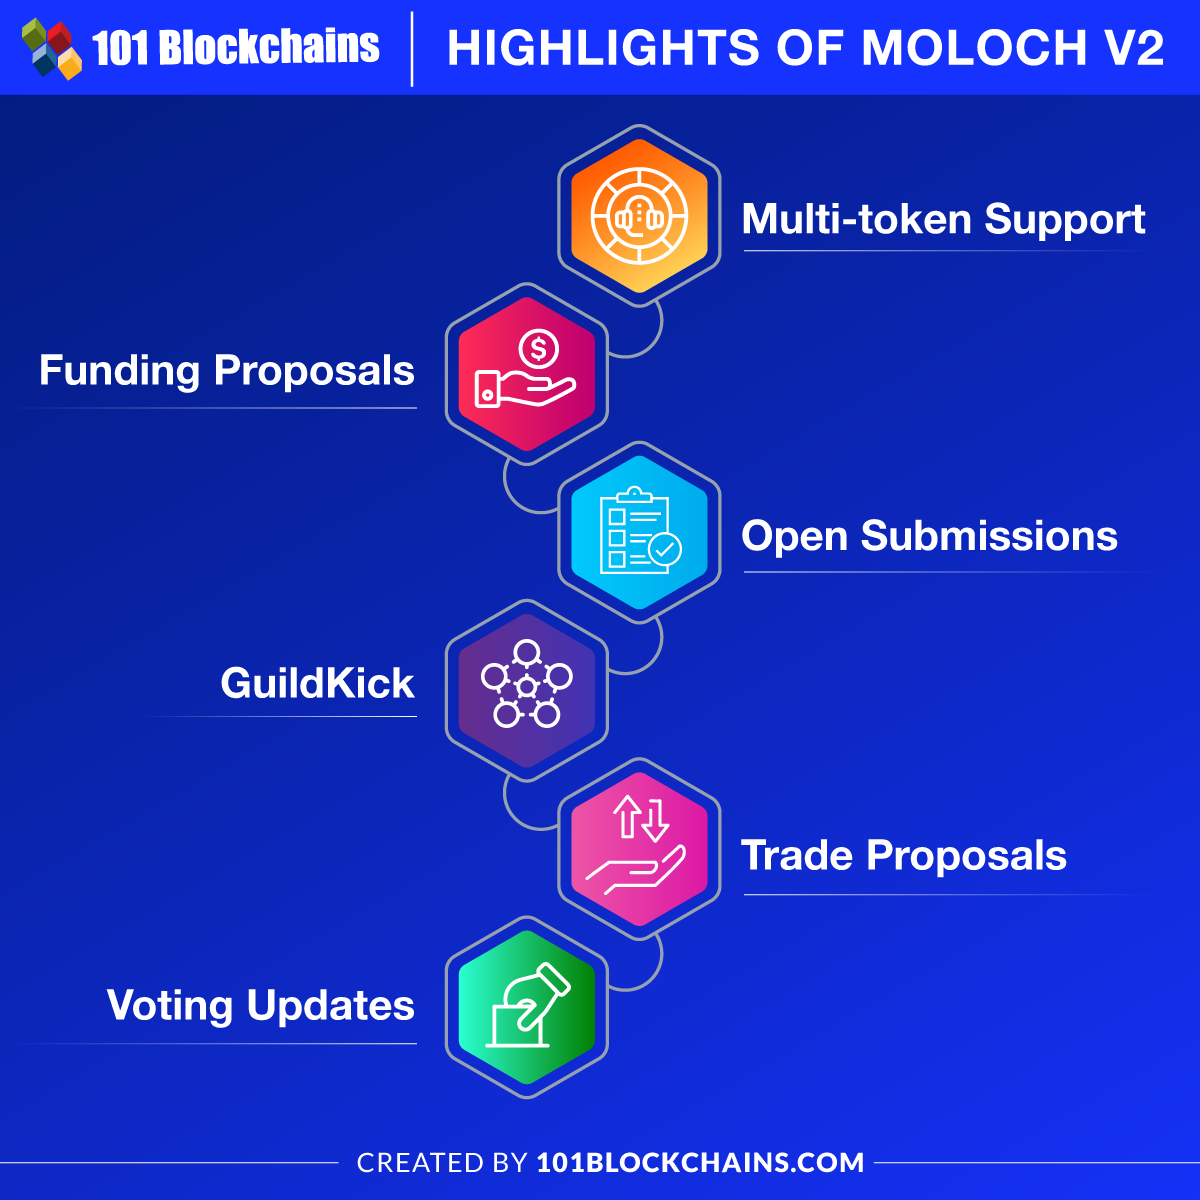 Highlights of Moloch V2